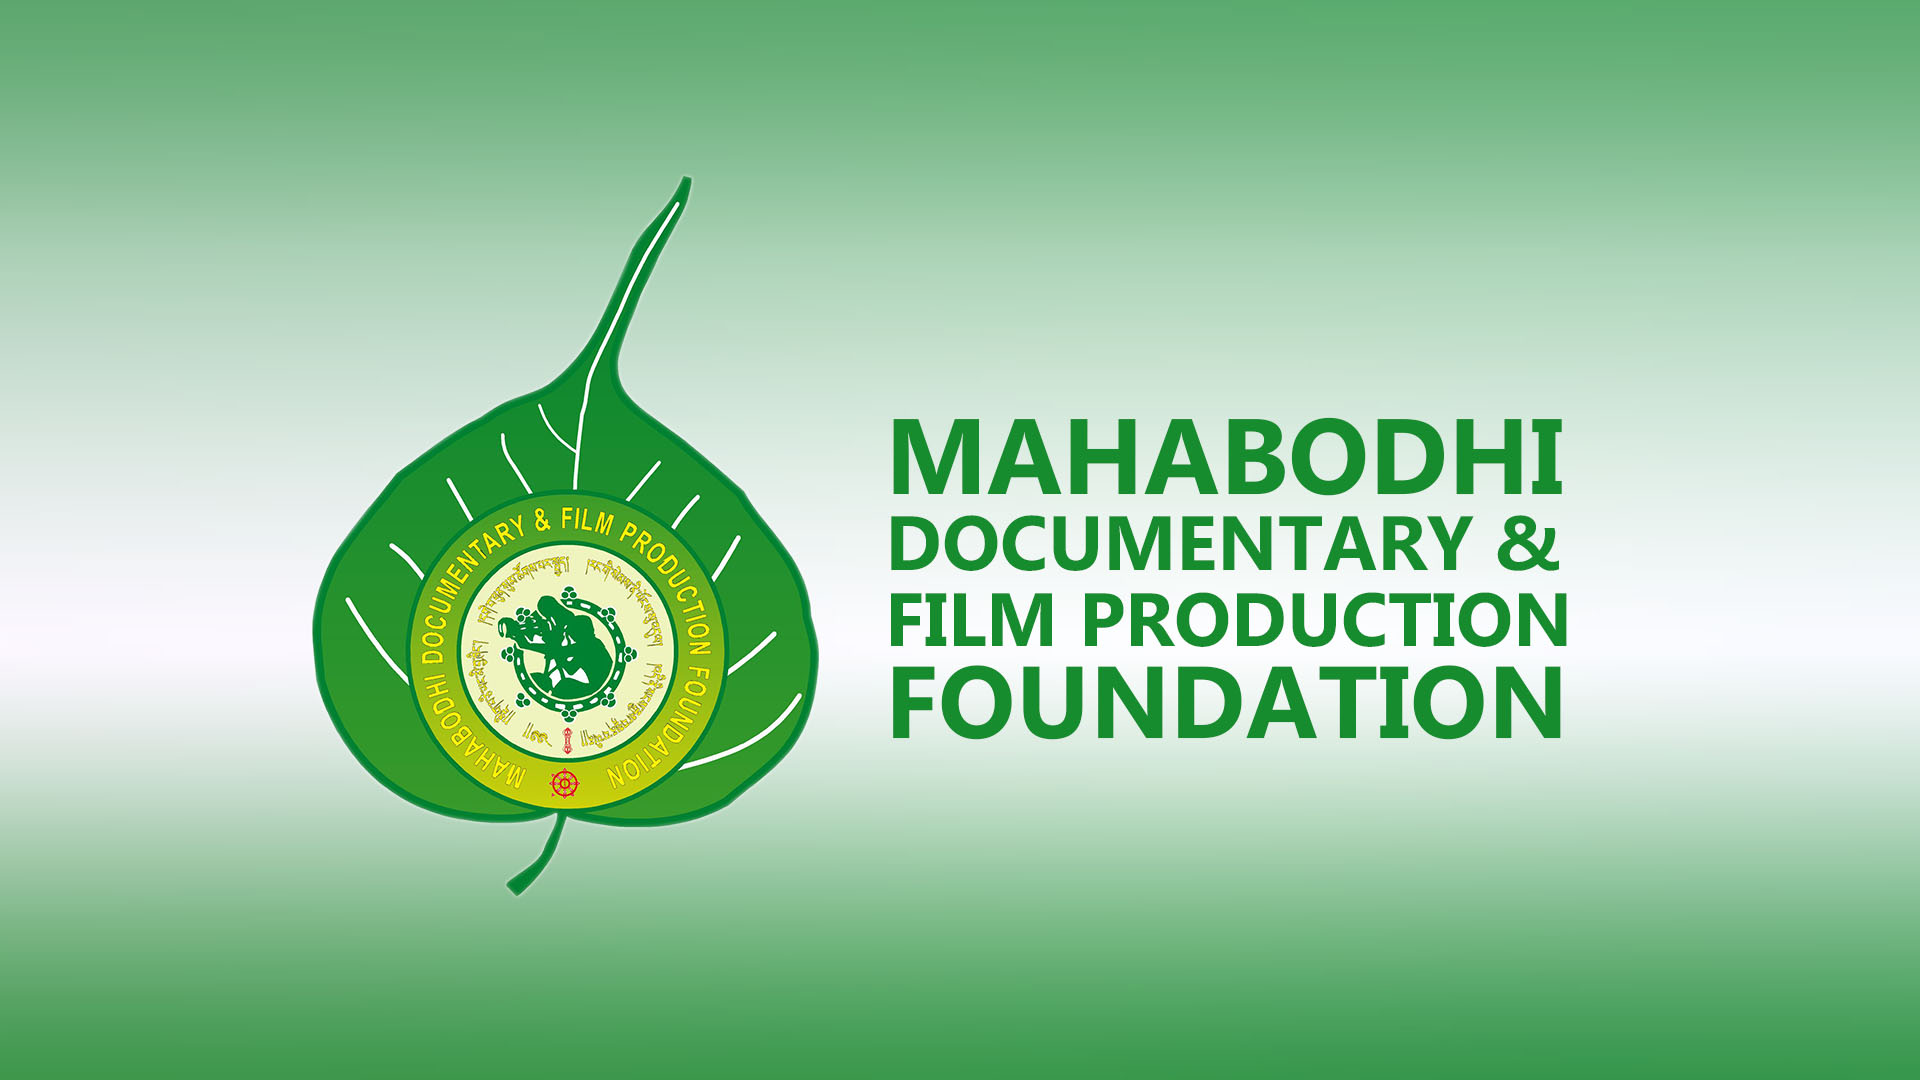 Mahabodhi Documentary & Film Production Foundation